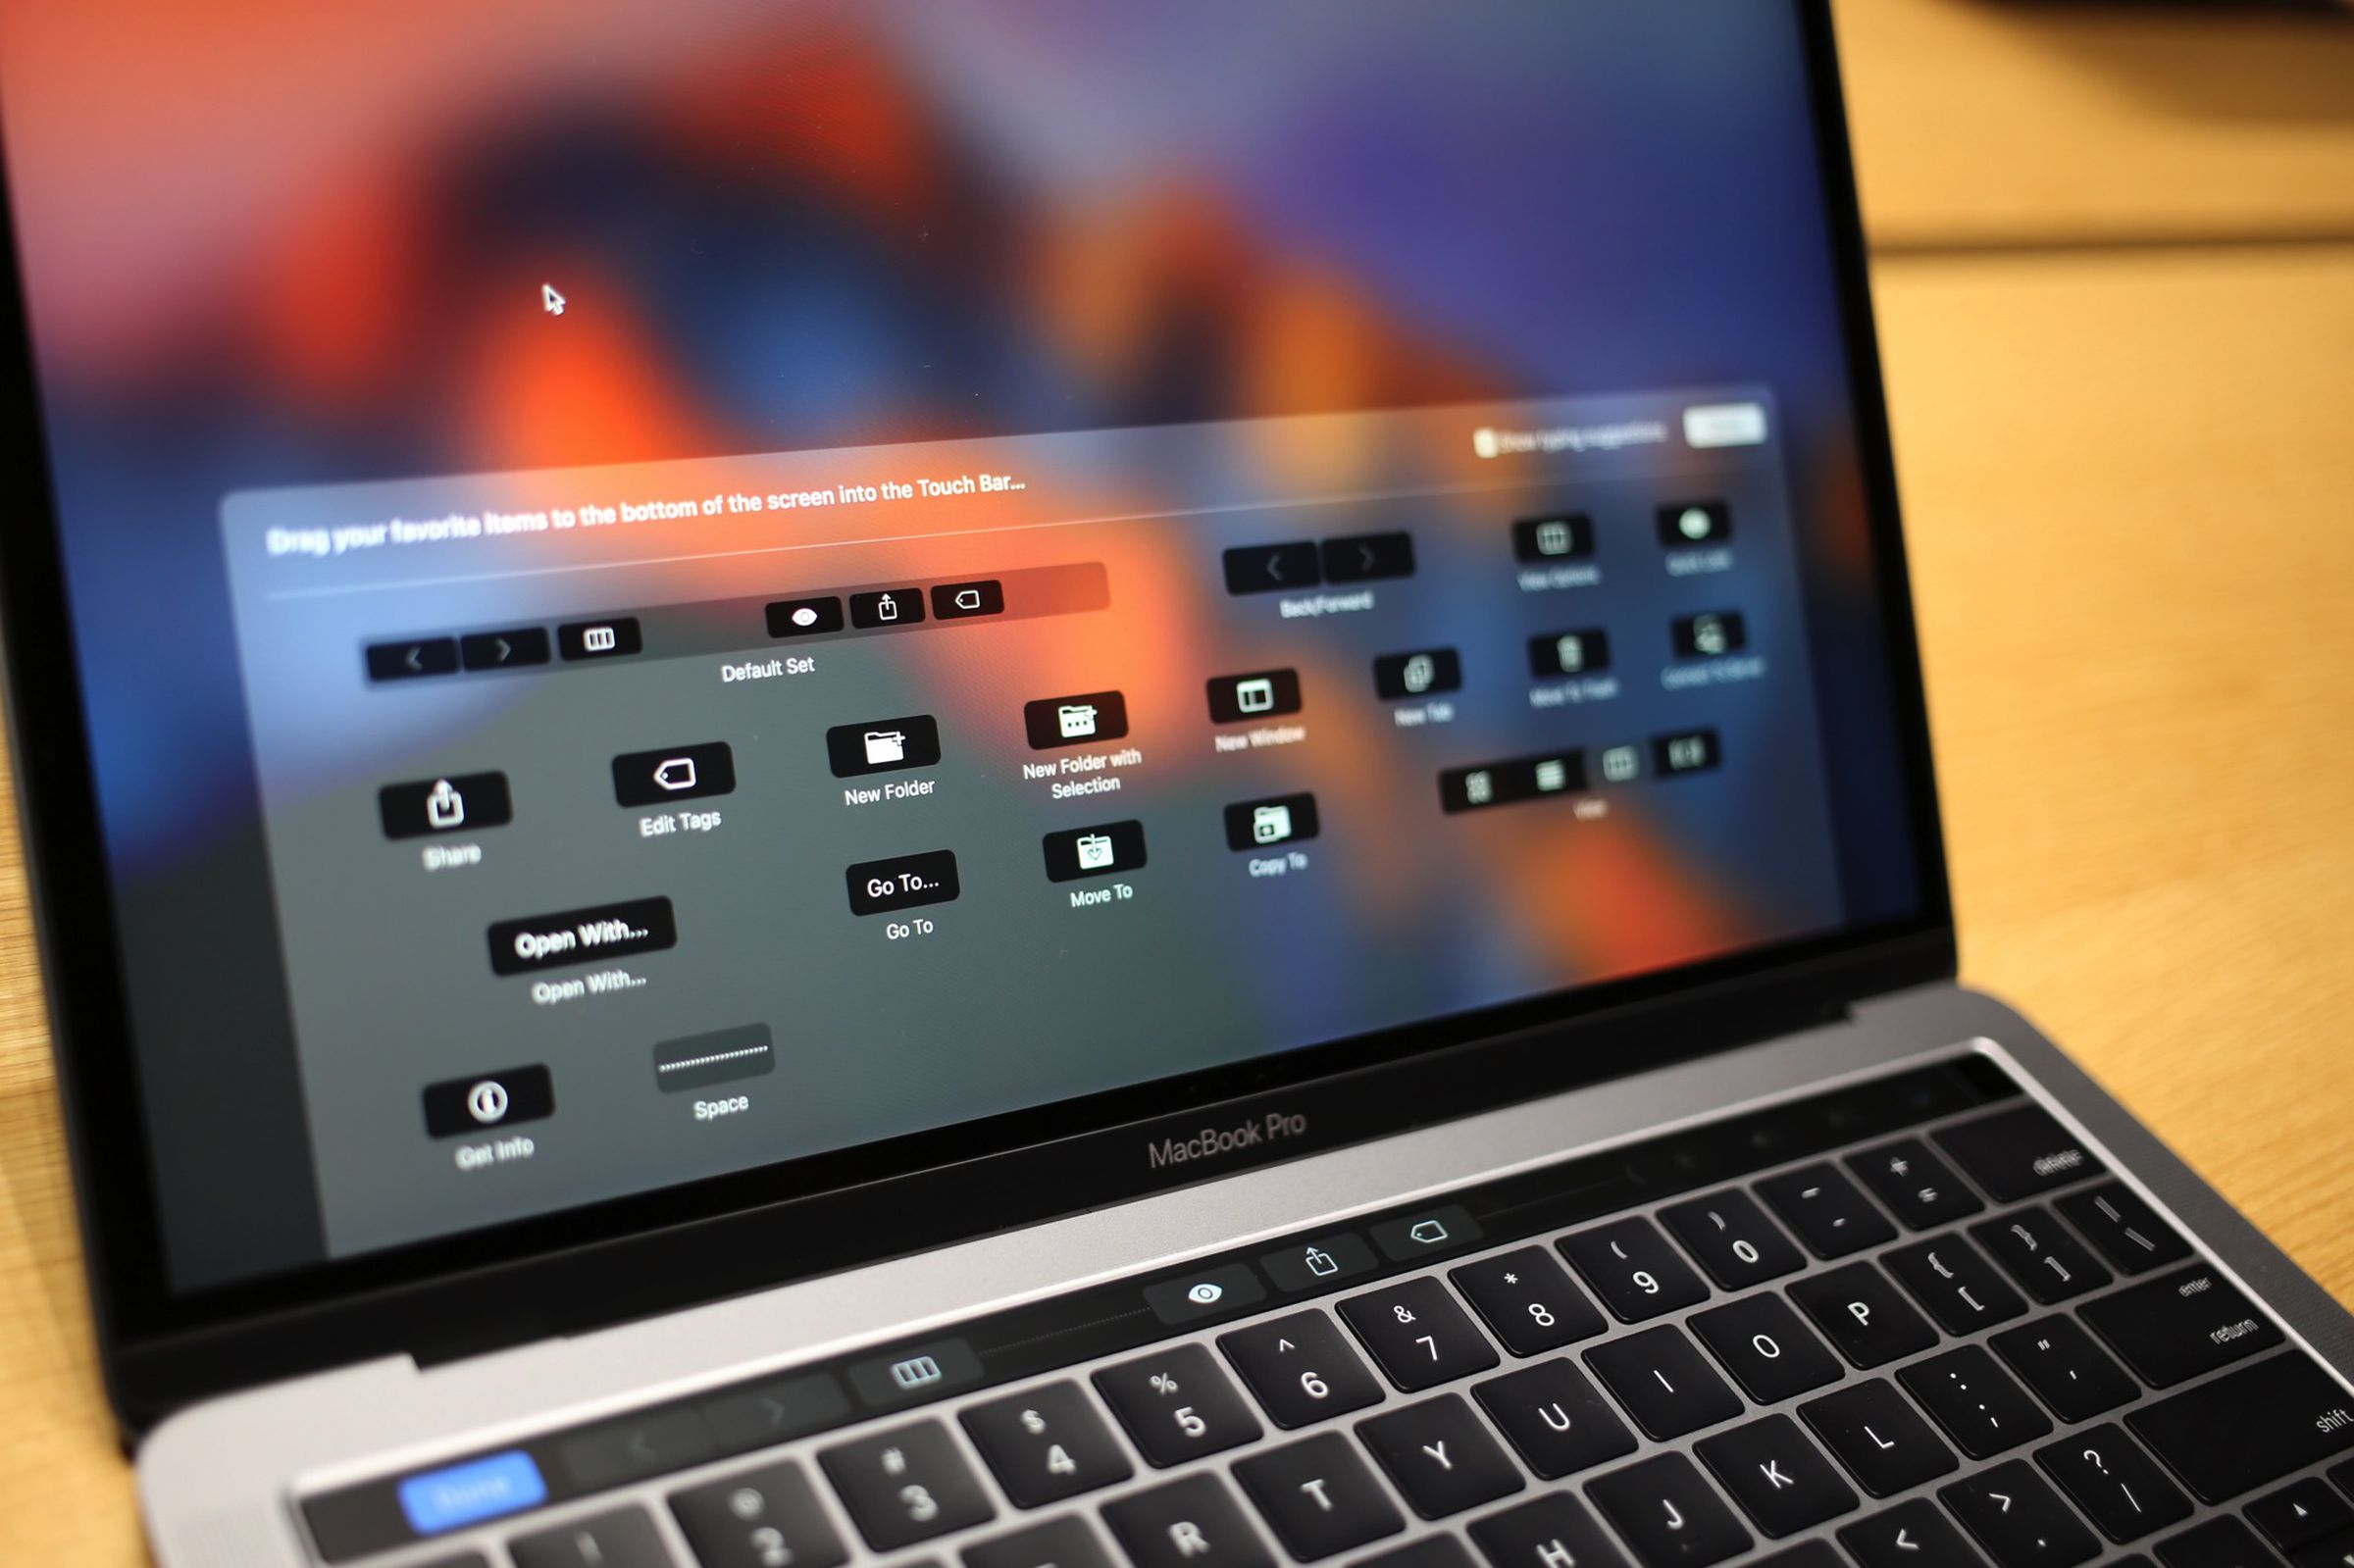 MacBook Pro 2016 hands-on photos